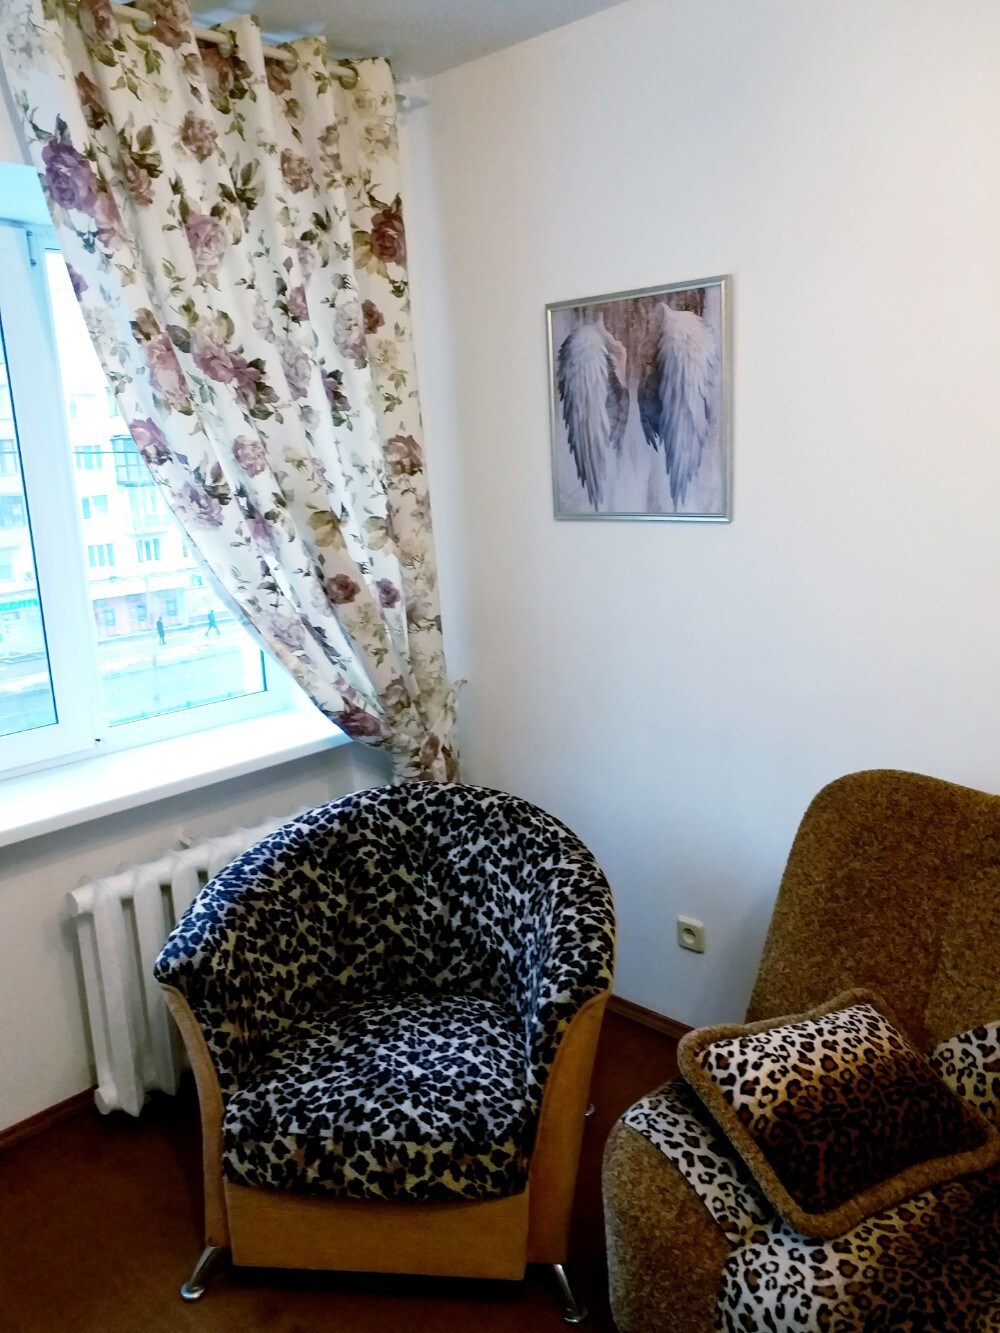 Cozzy Home on Pechersk
卧室公寓